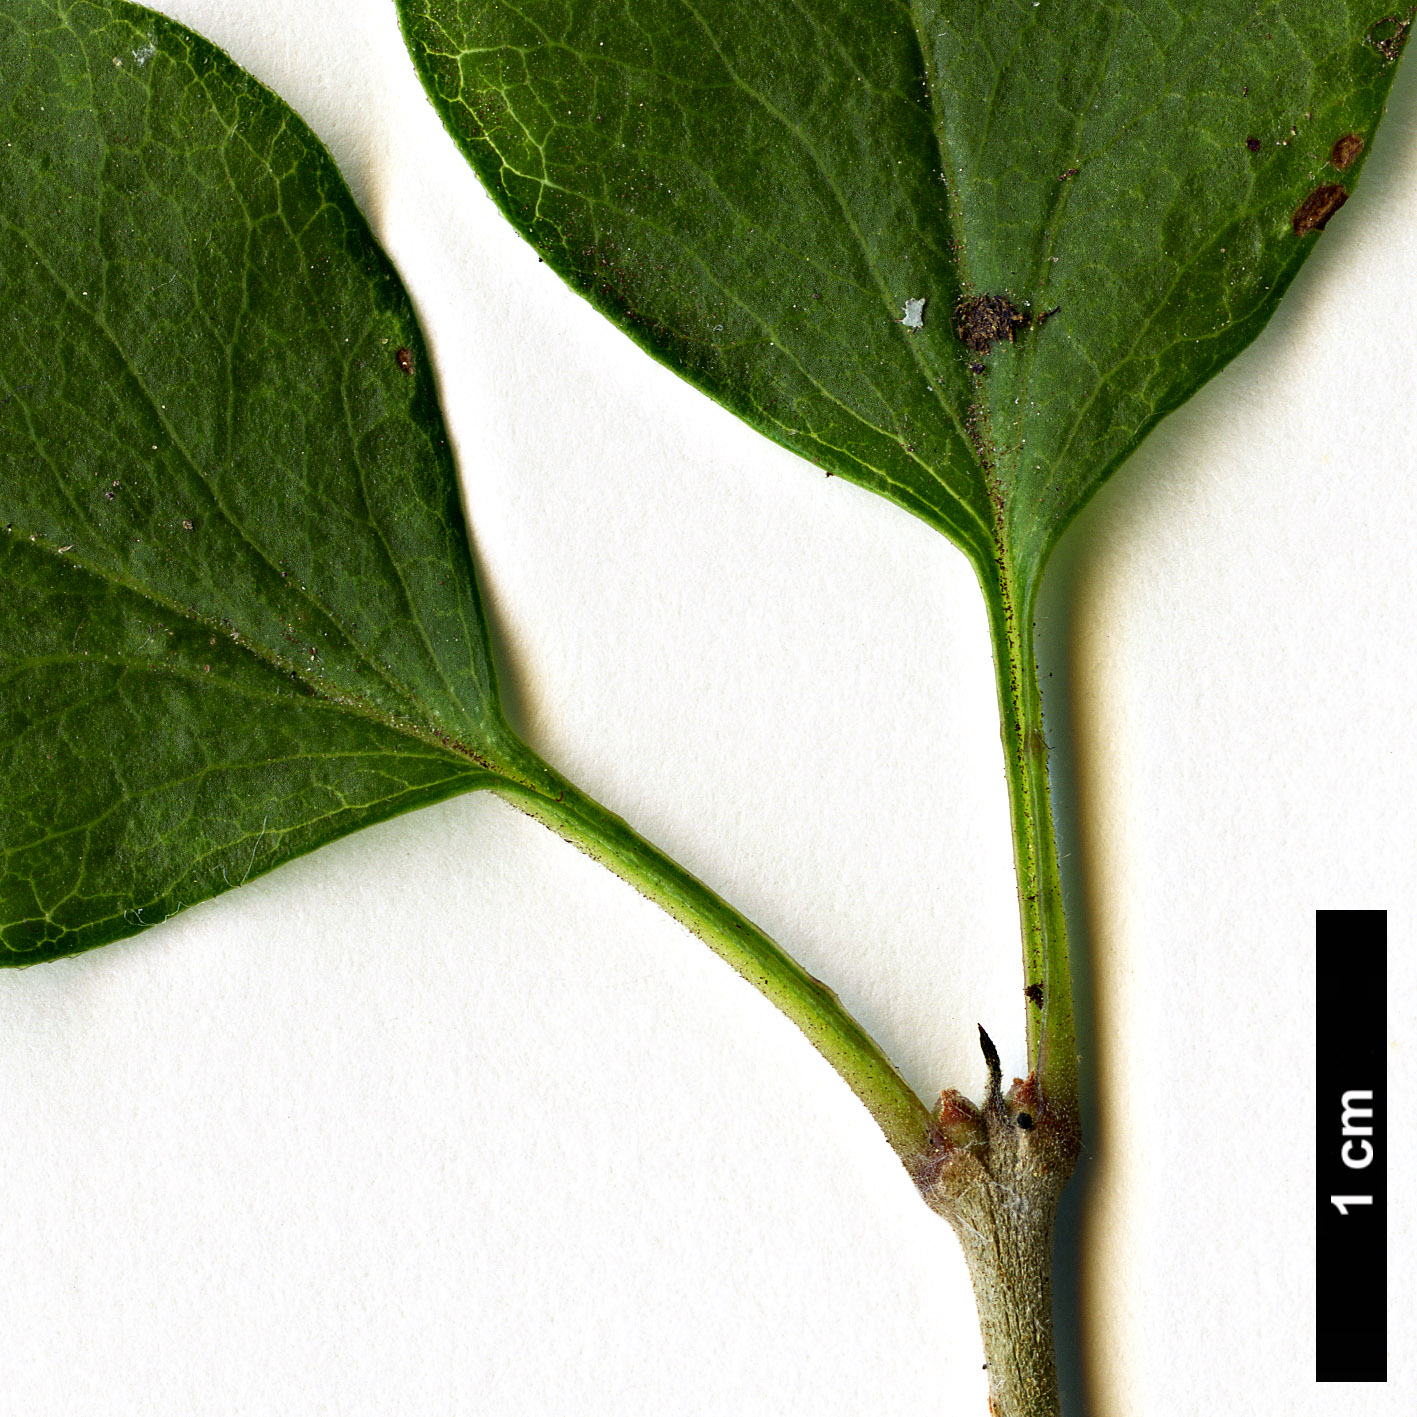 High resolution image: Family: Oleaceae - Genus: Syringa - Taxon: meyeri - SpeciesSub: 'Palibin'